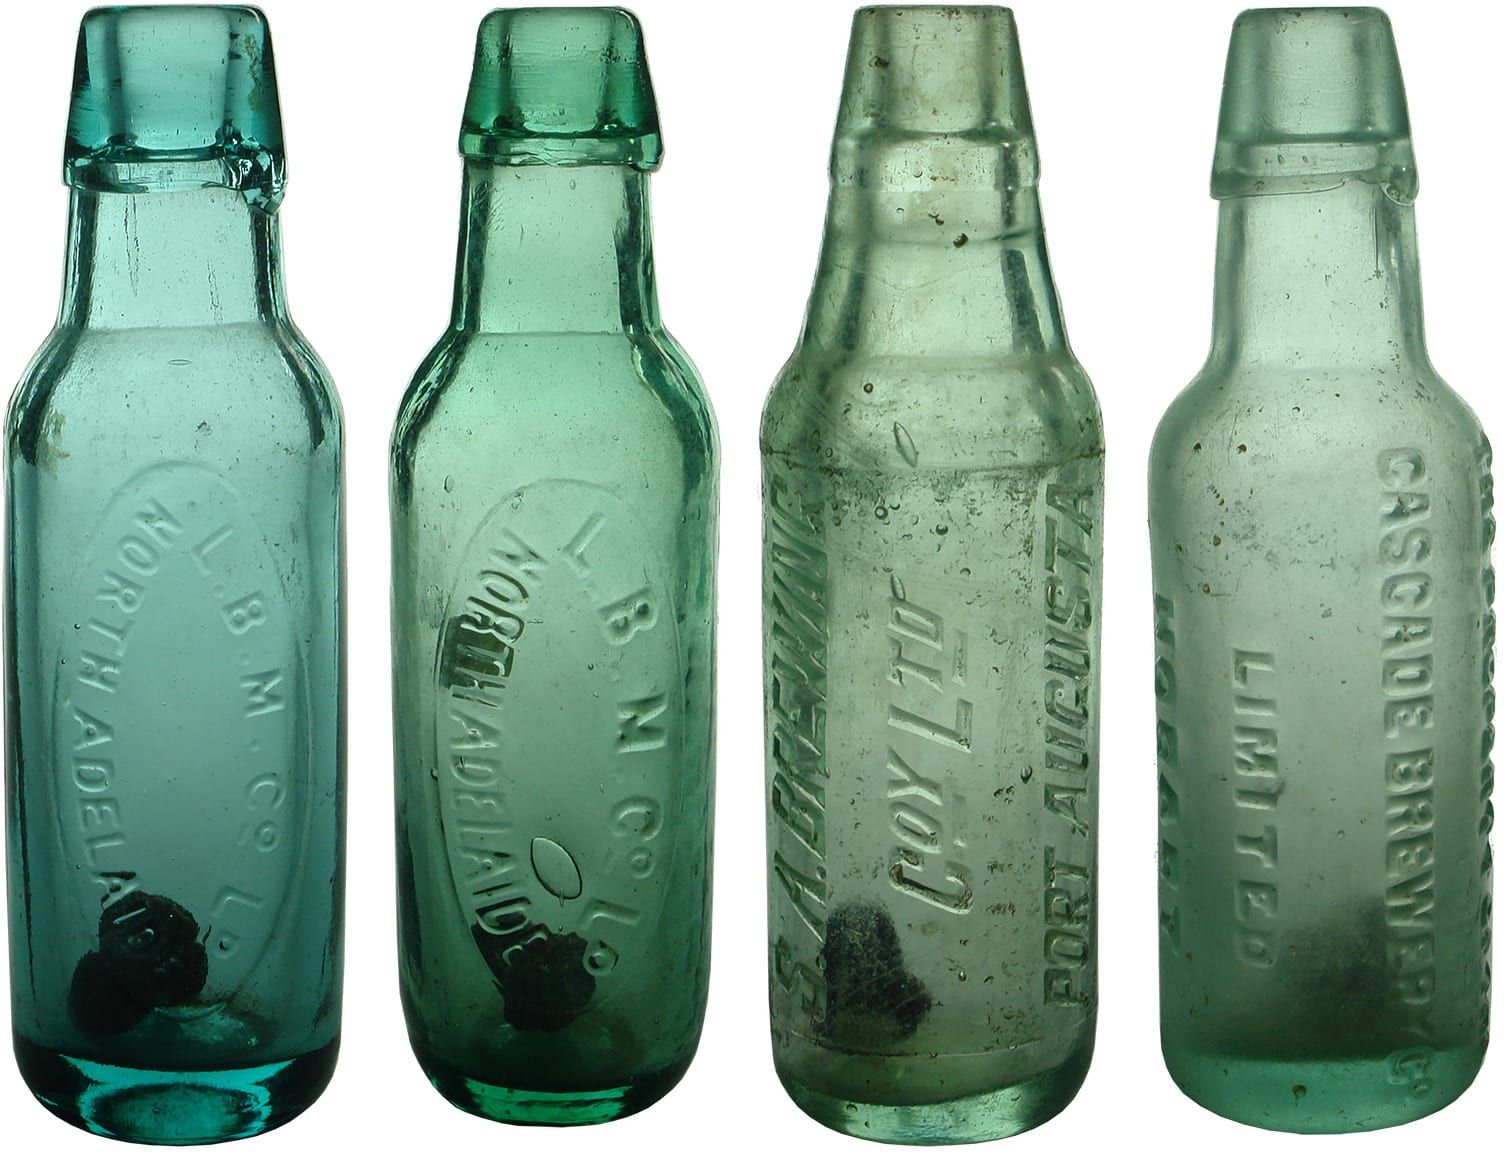 Antique Vintage Soft Drink Bottles